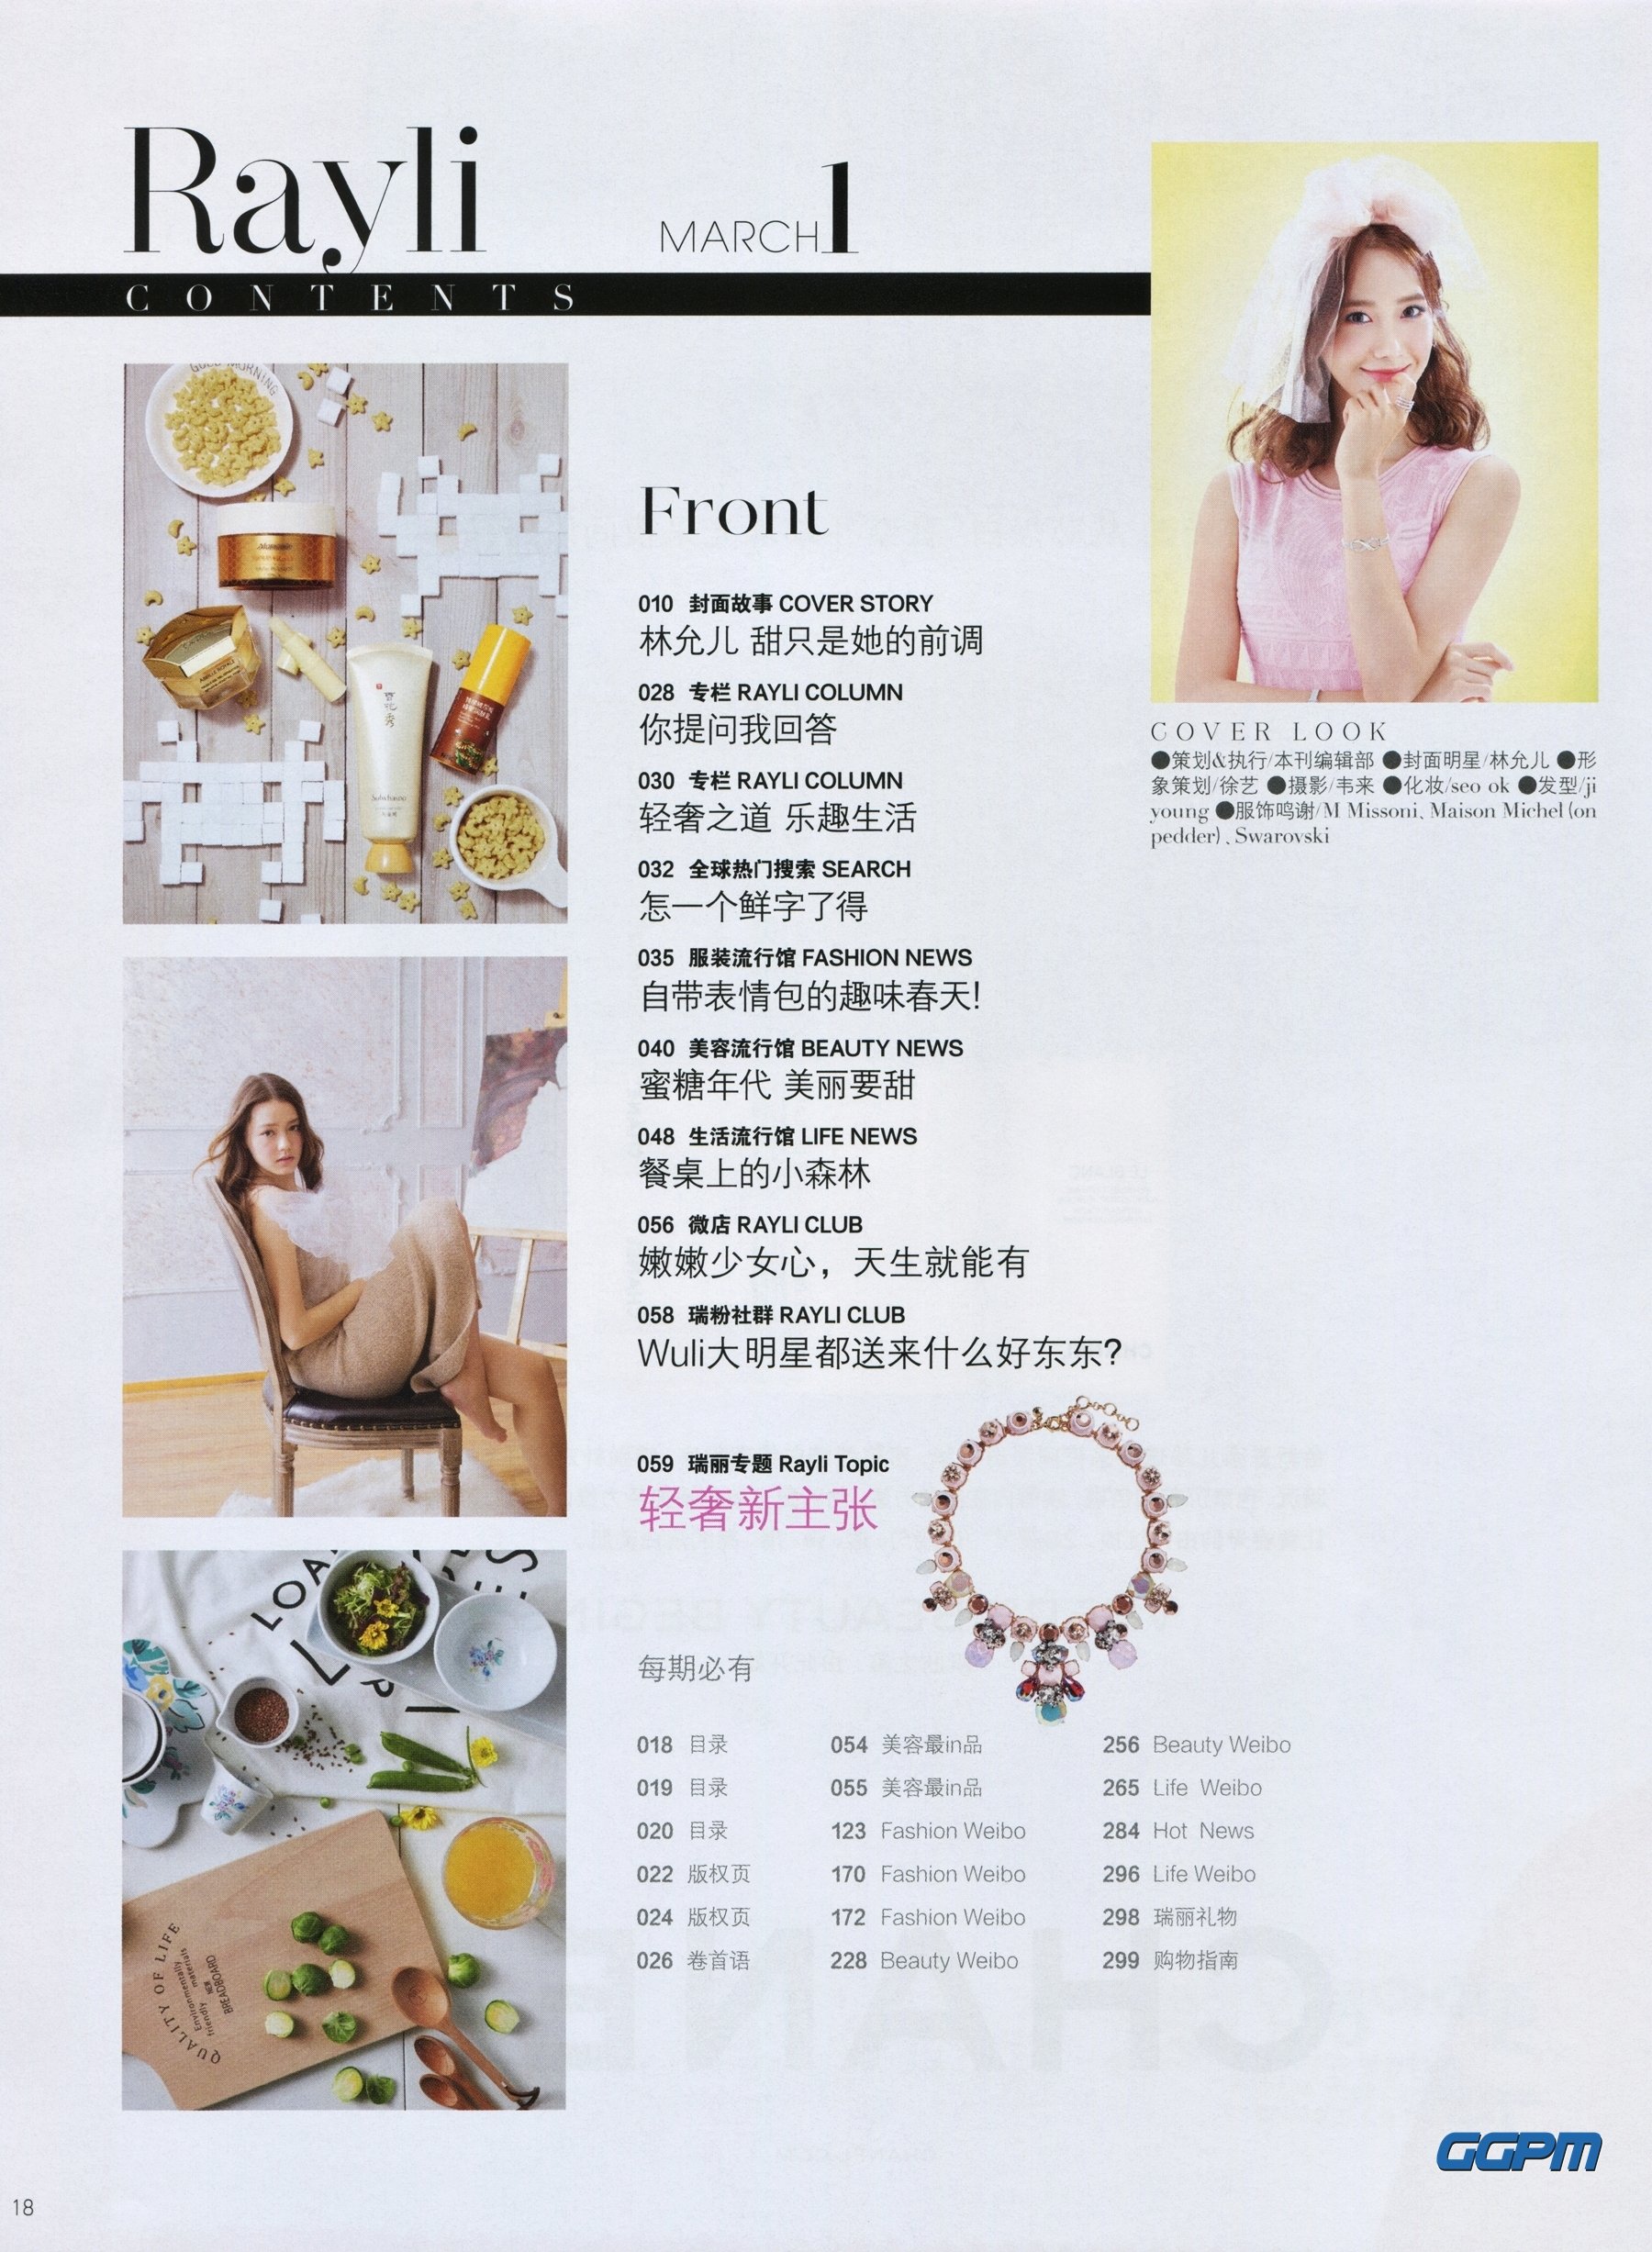 [PIC][17-02-2016]YoonA xuất hiện trên trang bìa ấn phẩm tháng 3 của tạp chí Trung Quốc - "Ray Li" JCqDFmR4_T-3000x3000